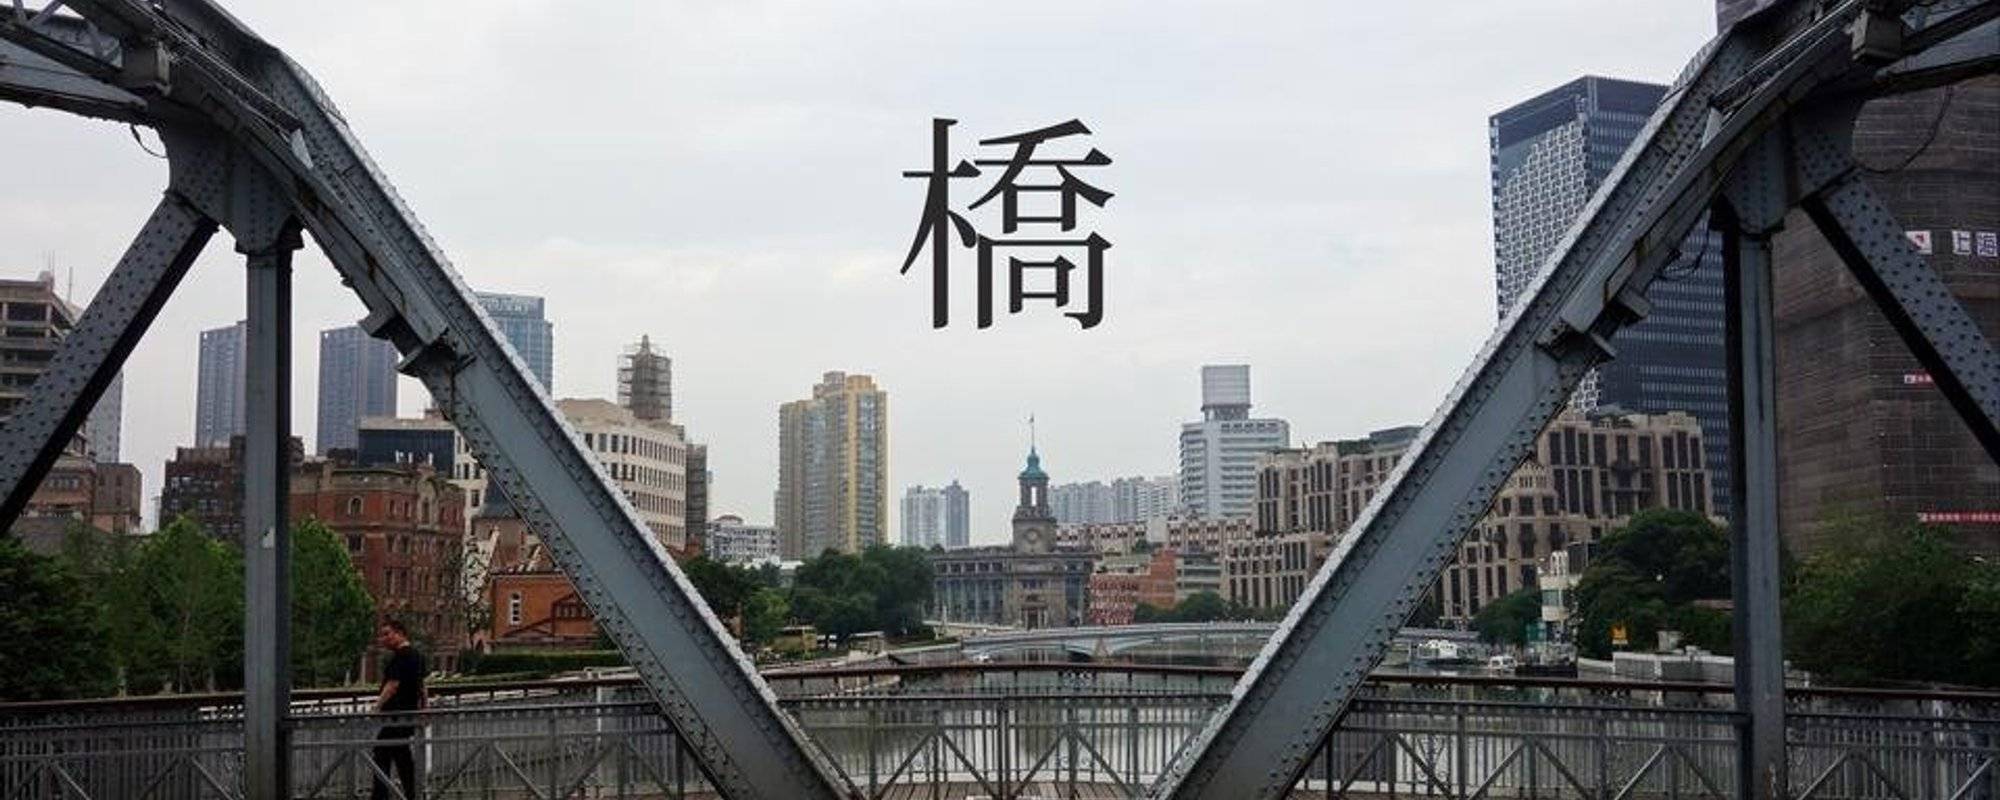 【蘇州河上的橋】A City A Story Photo Weekly Contest #30 BRIDGE 橋